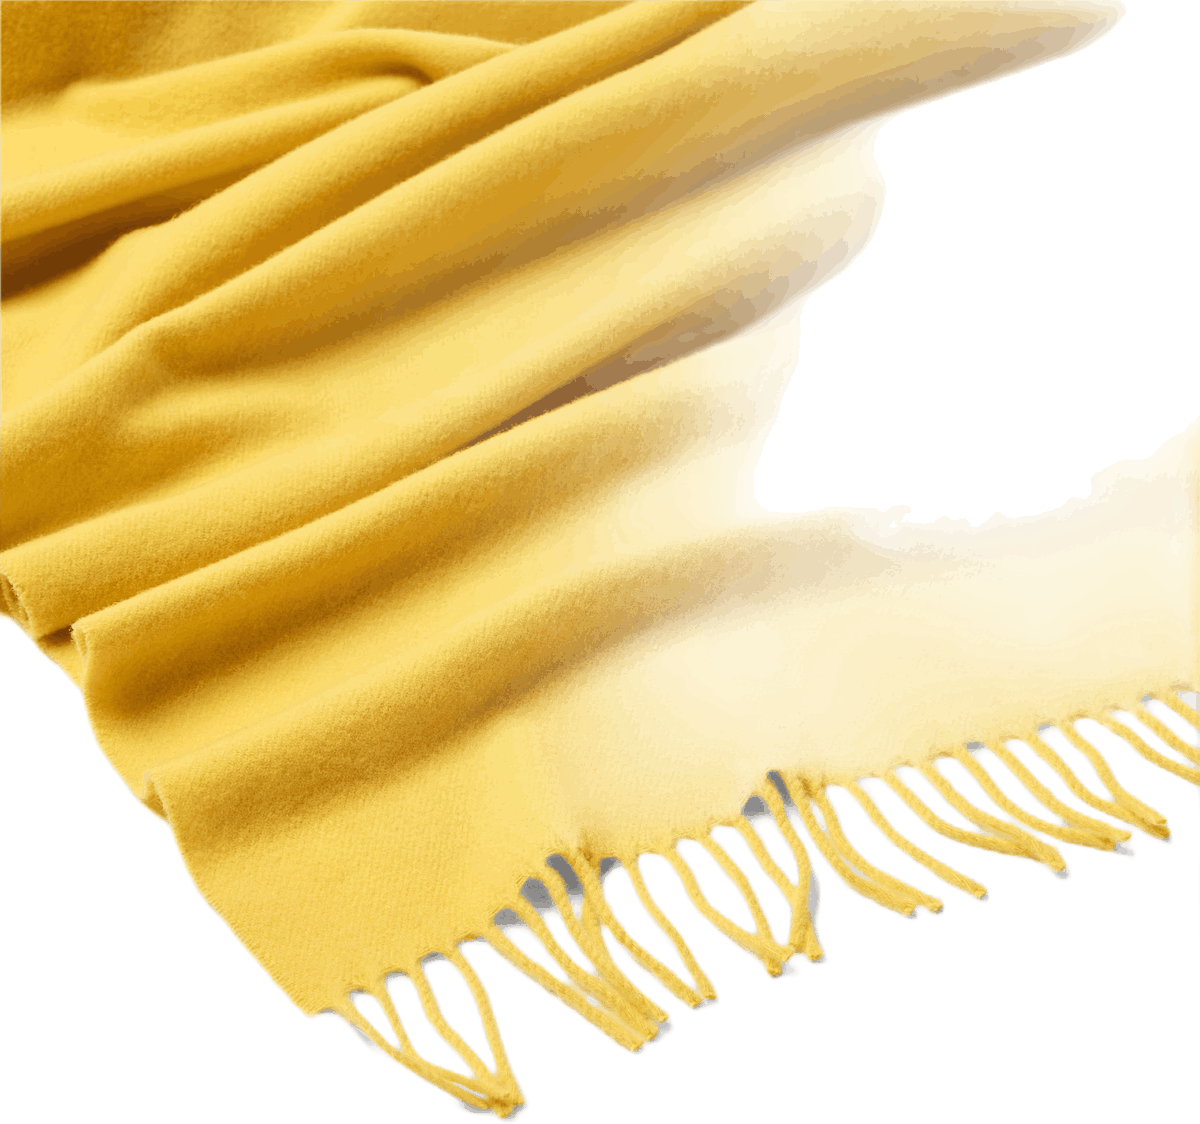 Poslka Scarf Yellow